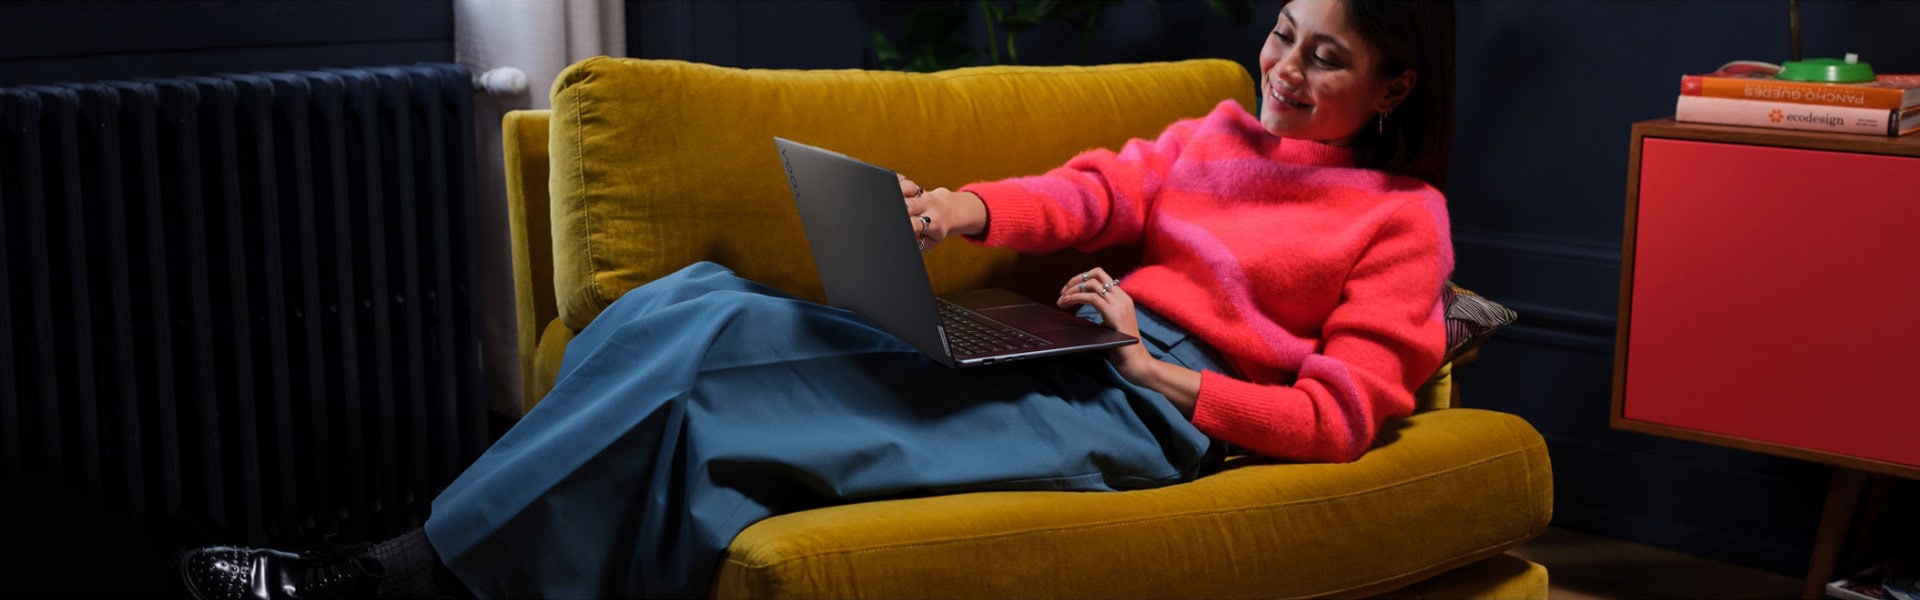 Žena sedi na velikoj stolici sa Lenovo Yoga laptopom koji joj se nalazi u krilu